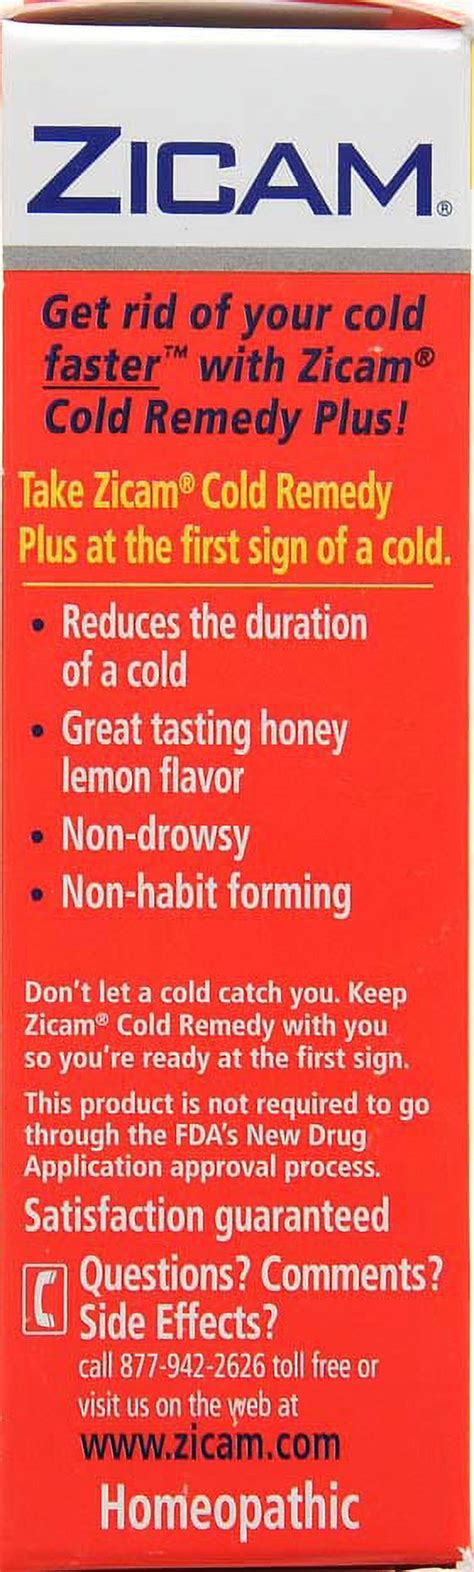 Zicam Honey Lemon Cold Remedy Plus Oral Mist 1 Fl Oz